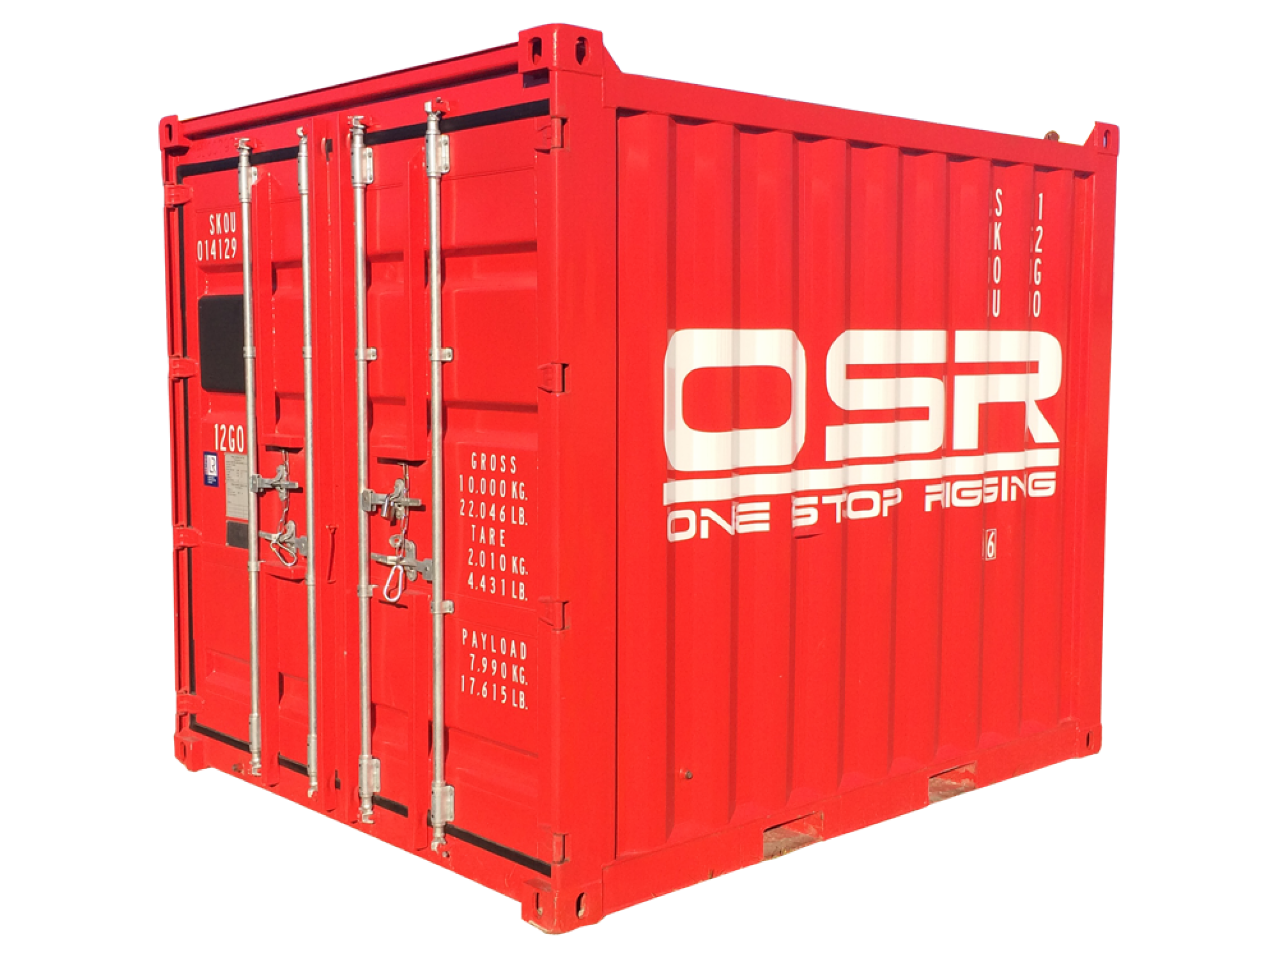 OSR Container